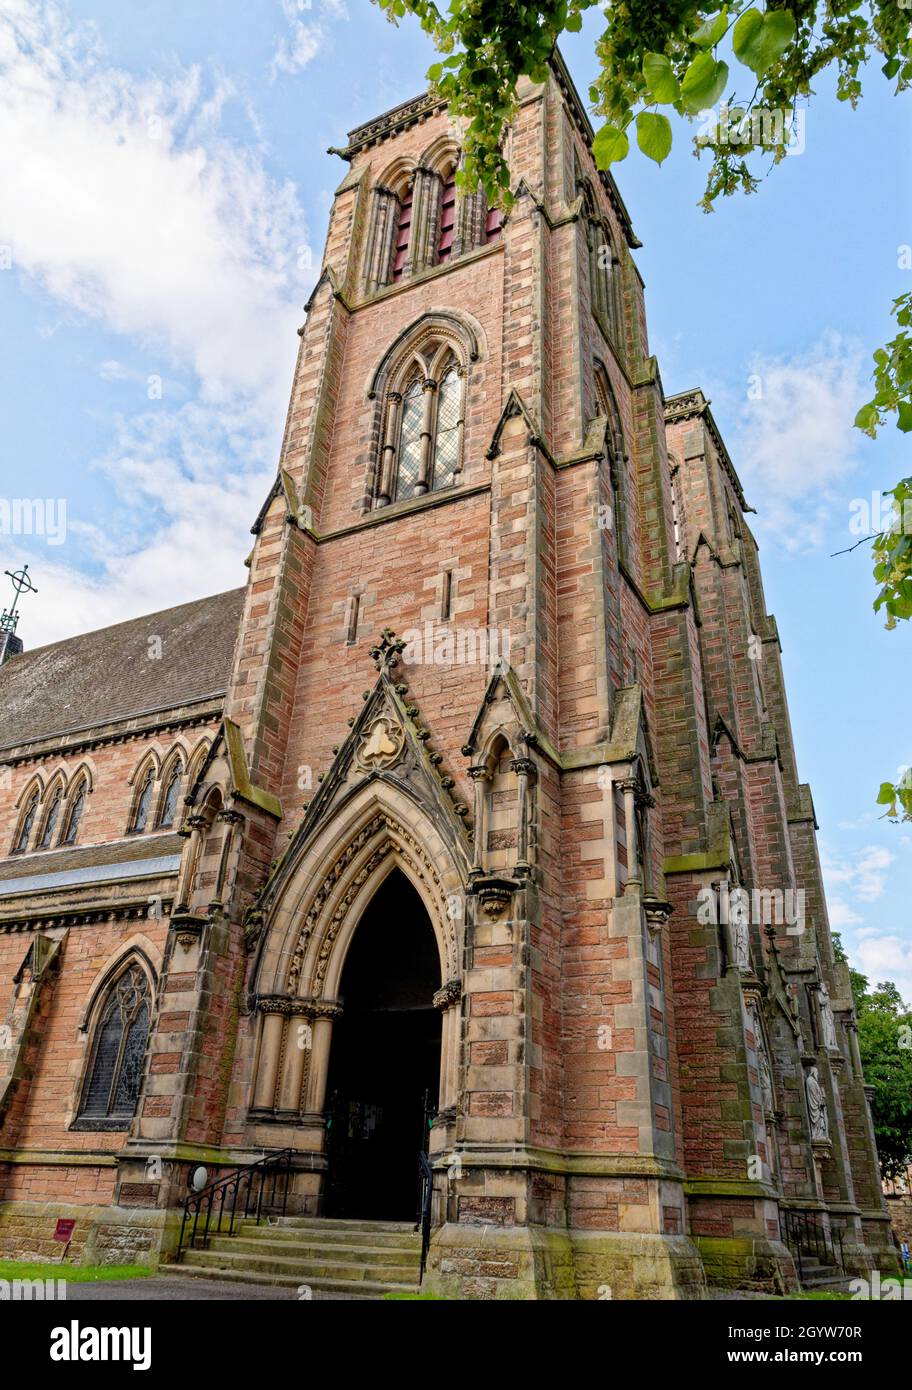 Cathédrale d'Inverness.L'église de la cathédrale Saint-André au bord de la rivière Ness à Inverness, Écosse - Royaume-Uni - 18 juillet 2021 Banque D'Images